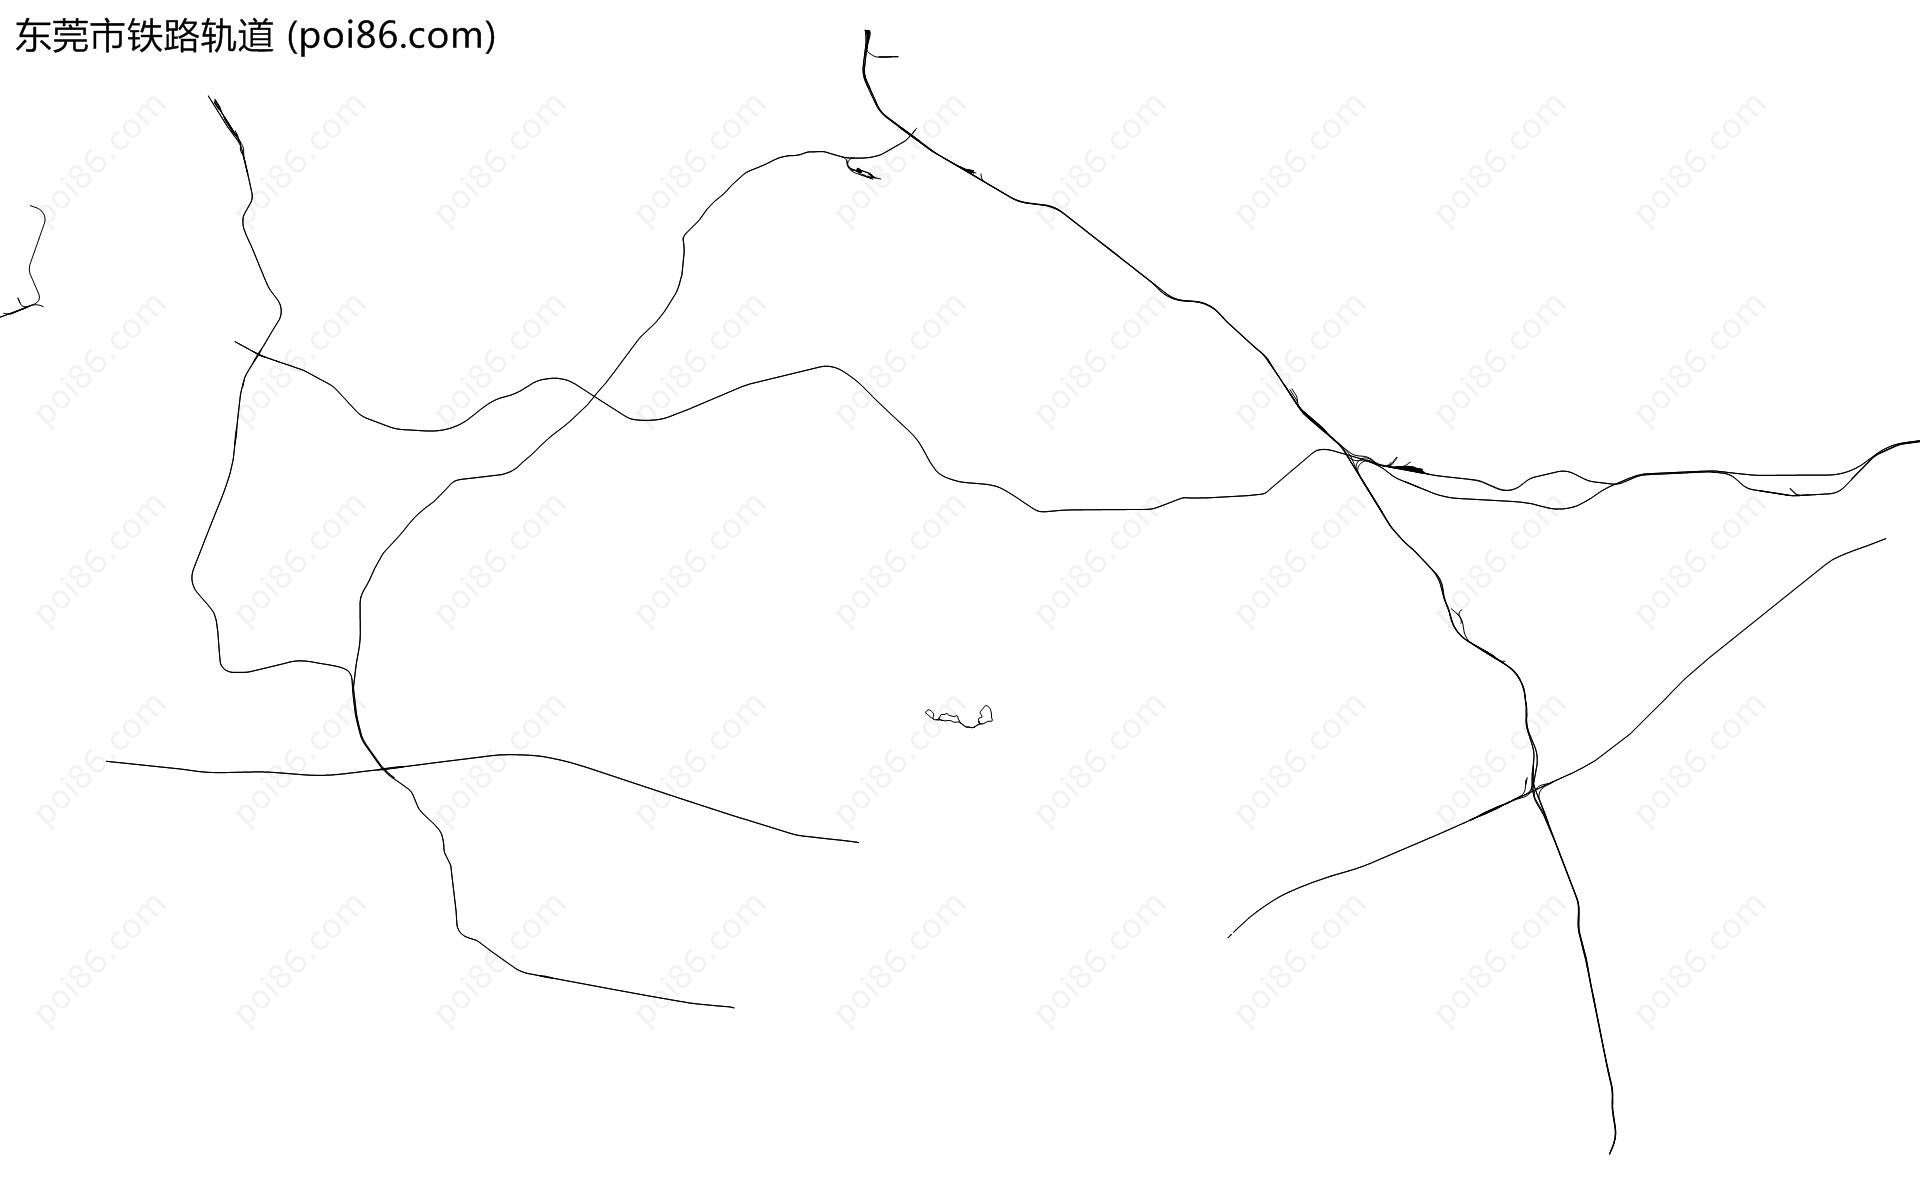 东莞市铁路轨道地图